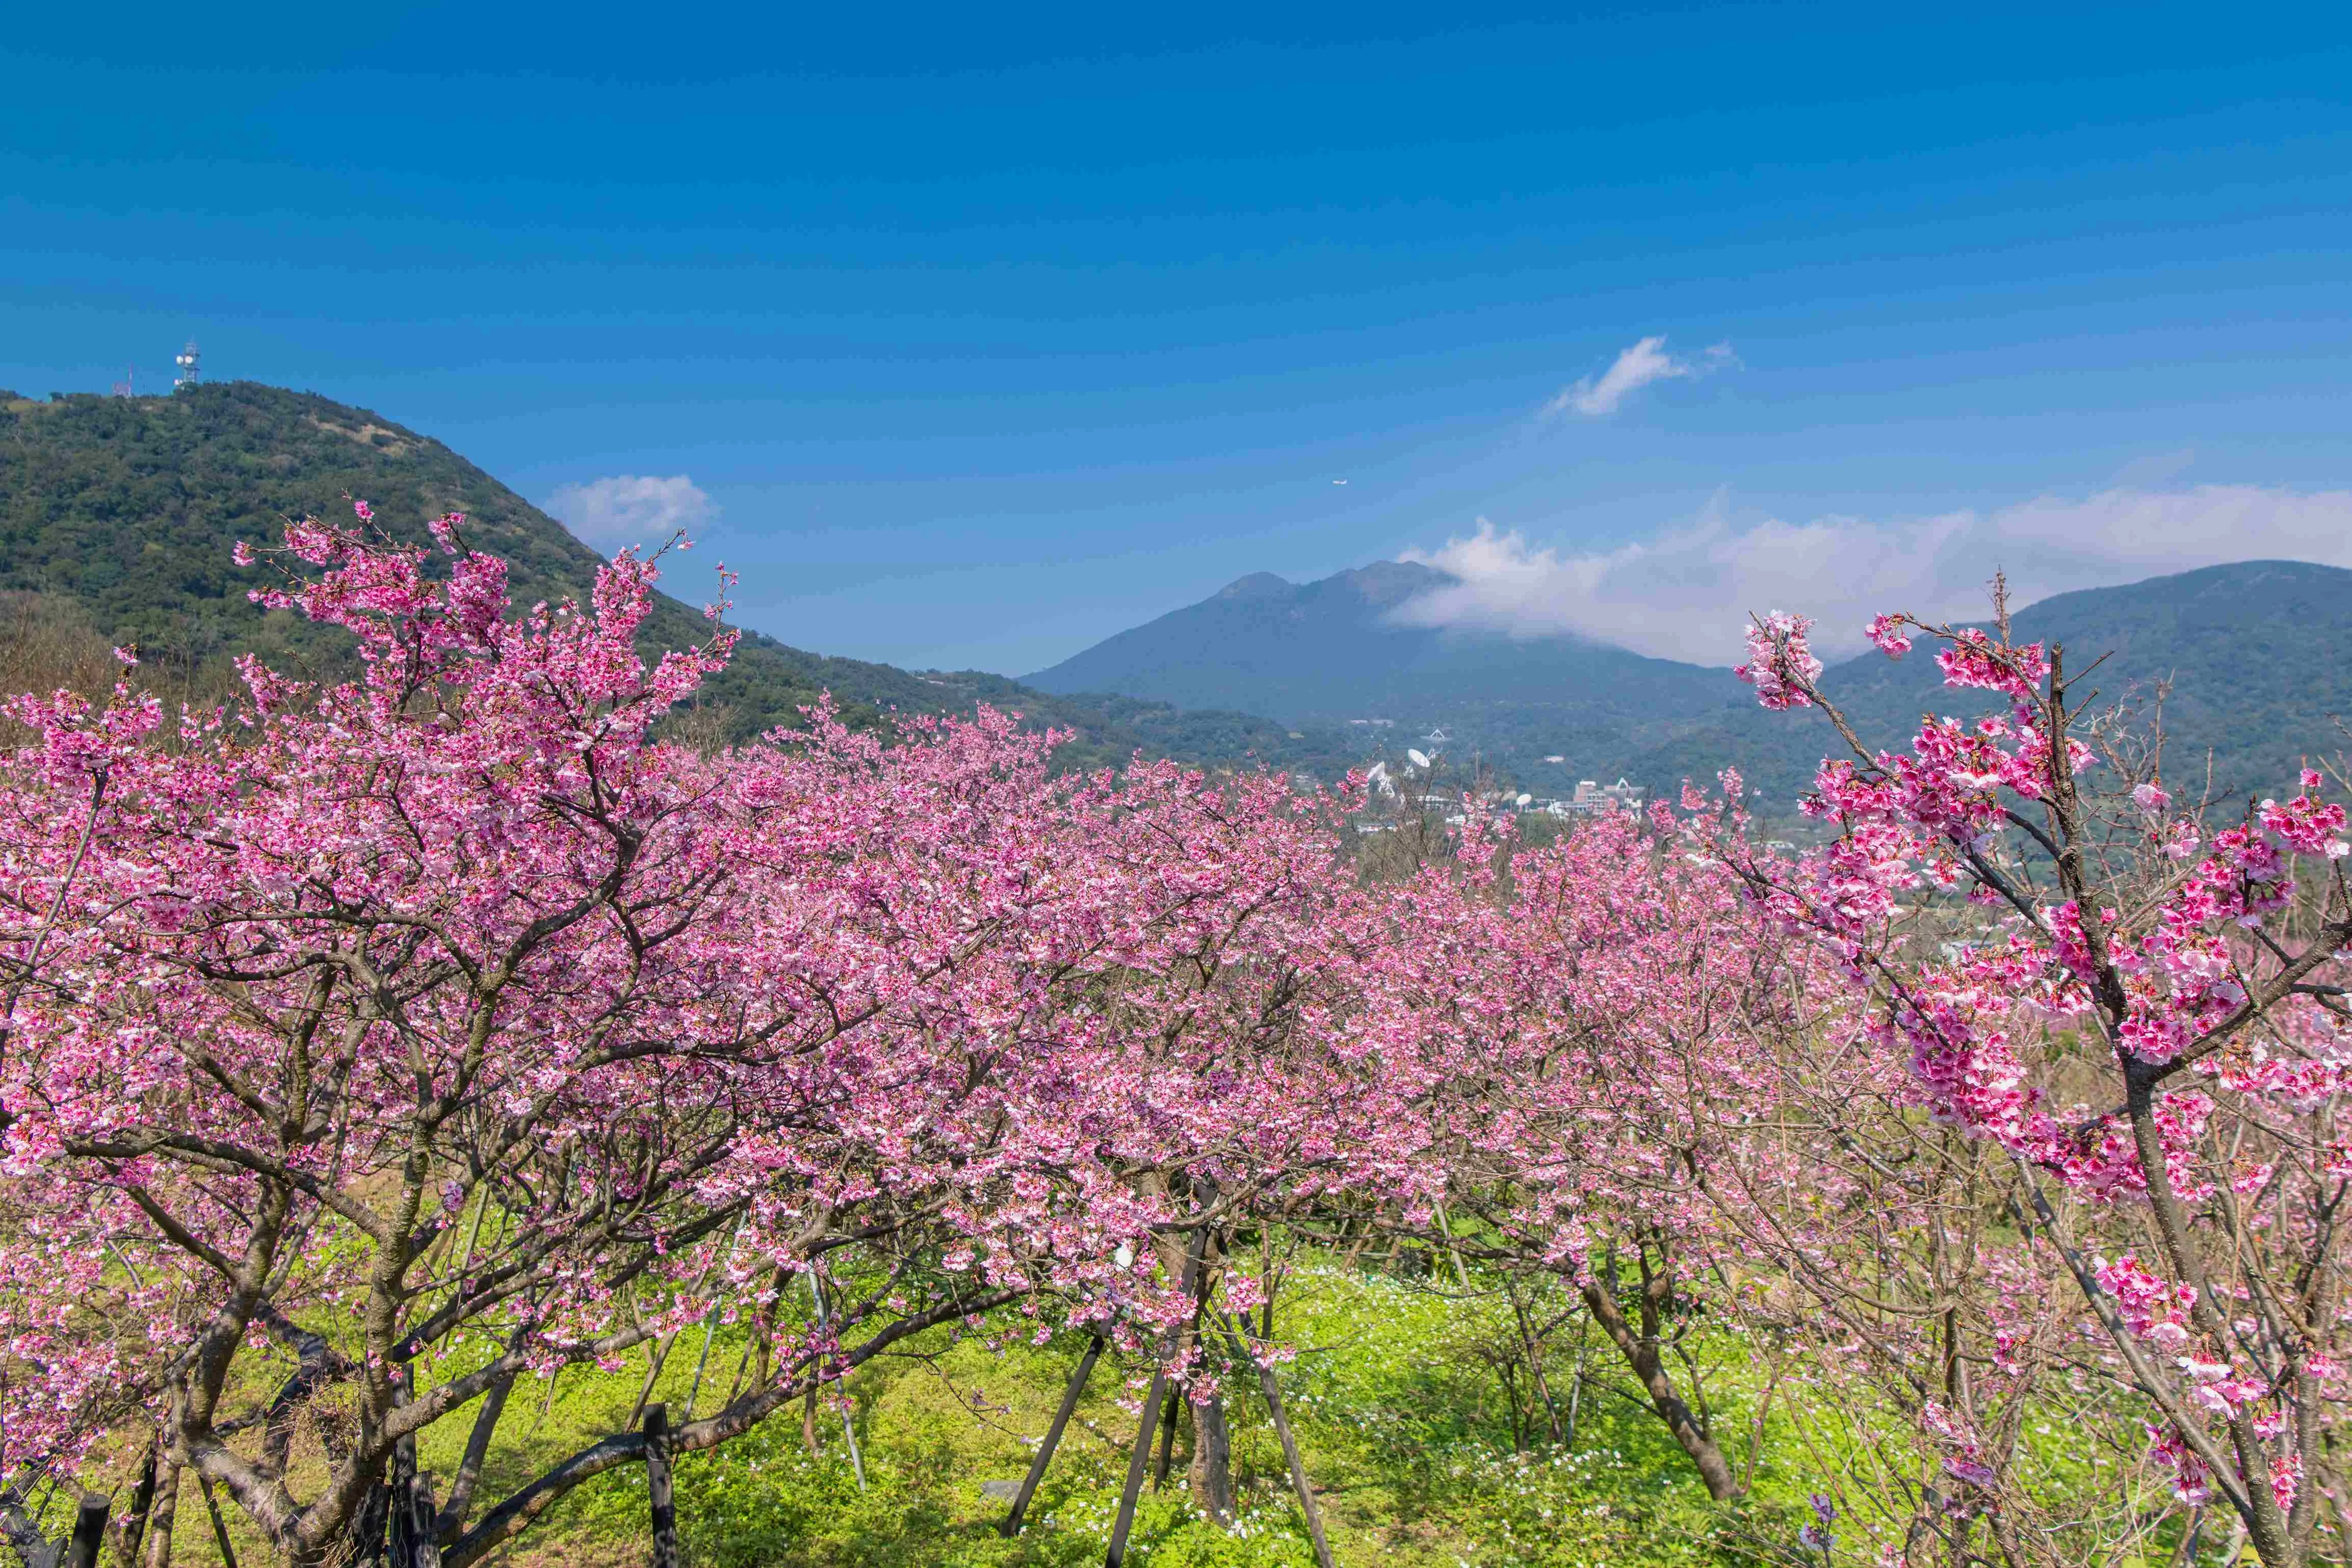 【賞花人士】櫻花林和諧了整片山林景色。 (1)